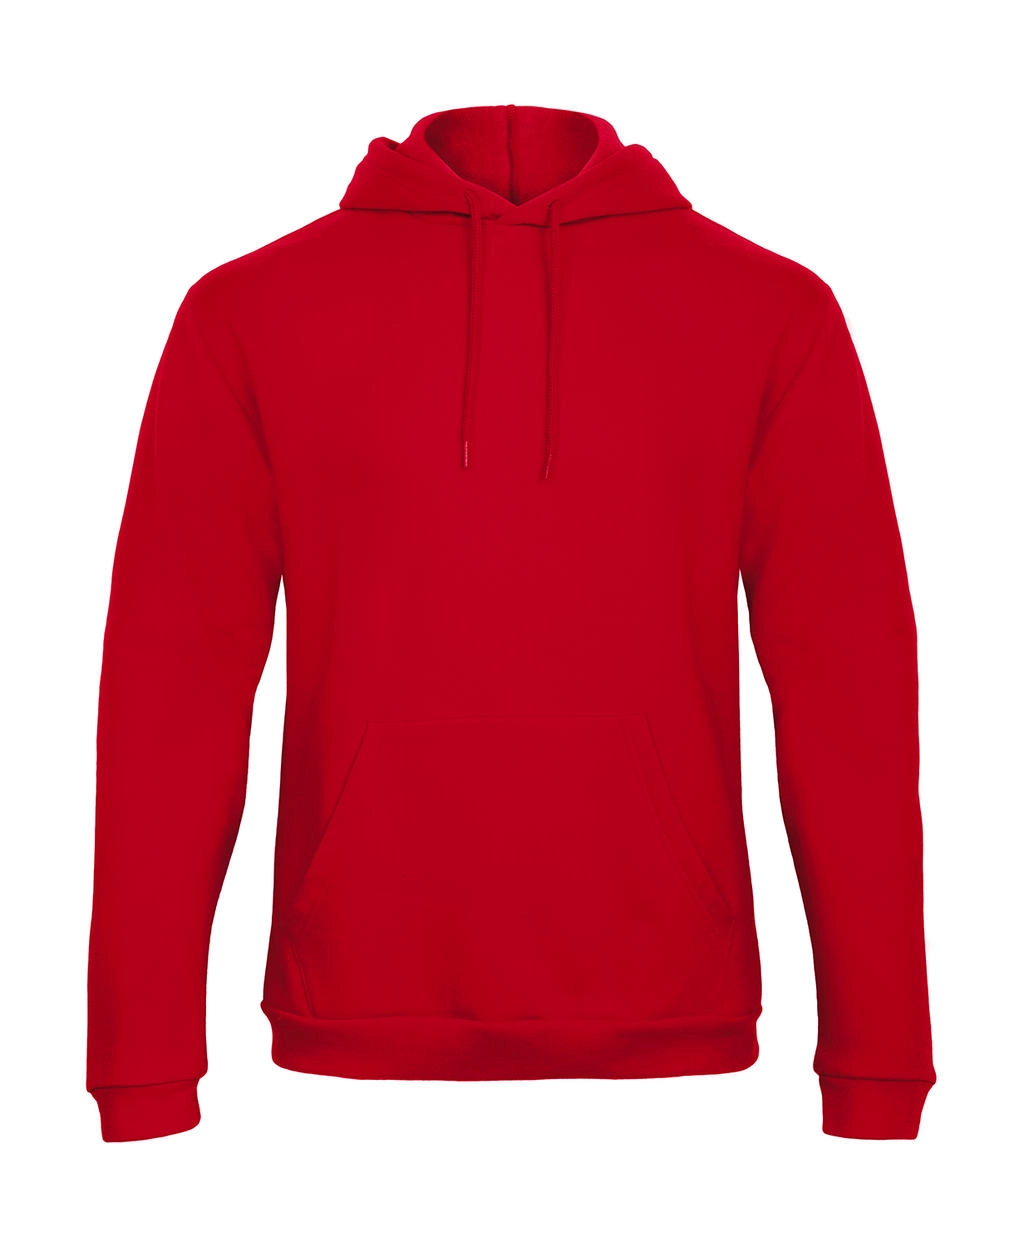 ID.203 50/50 Hooded Sweatshirt Unisex  zum Besticken und Bedrucken in der Farbe Red mit Ihren Logo, Schriftzug oder Motiv.